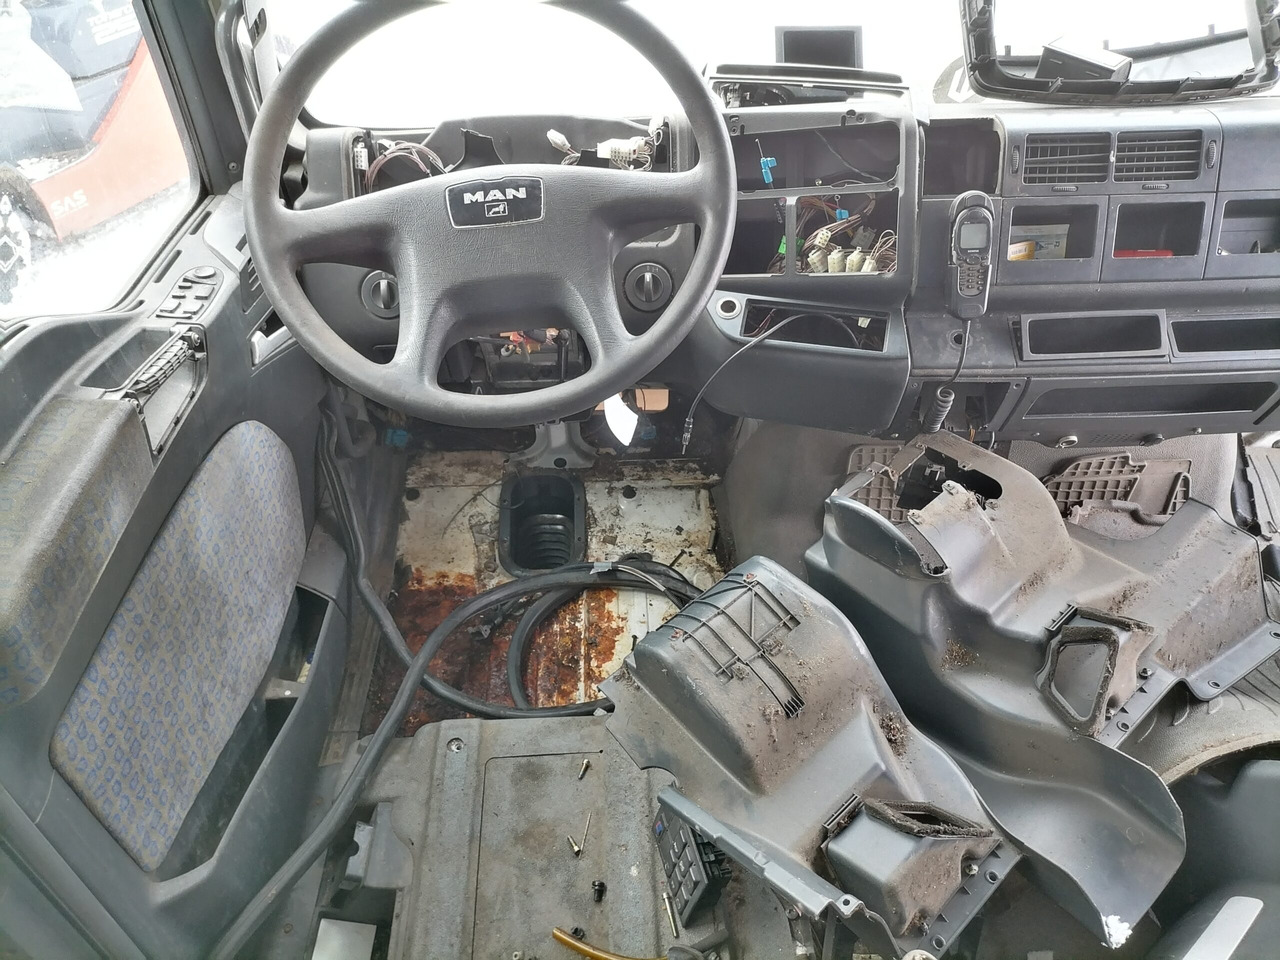 Cabine e interior de Caminhão MAN Cab TG460: foto 14